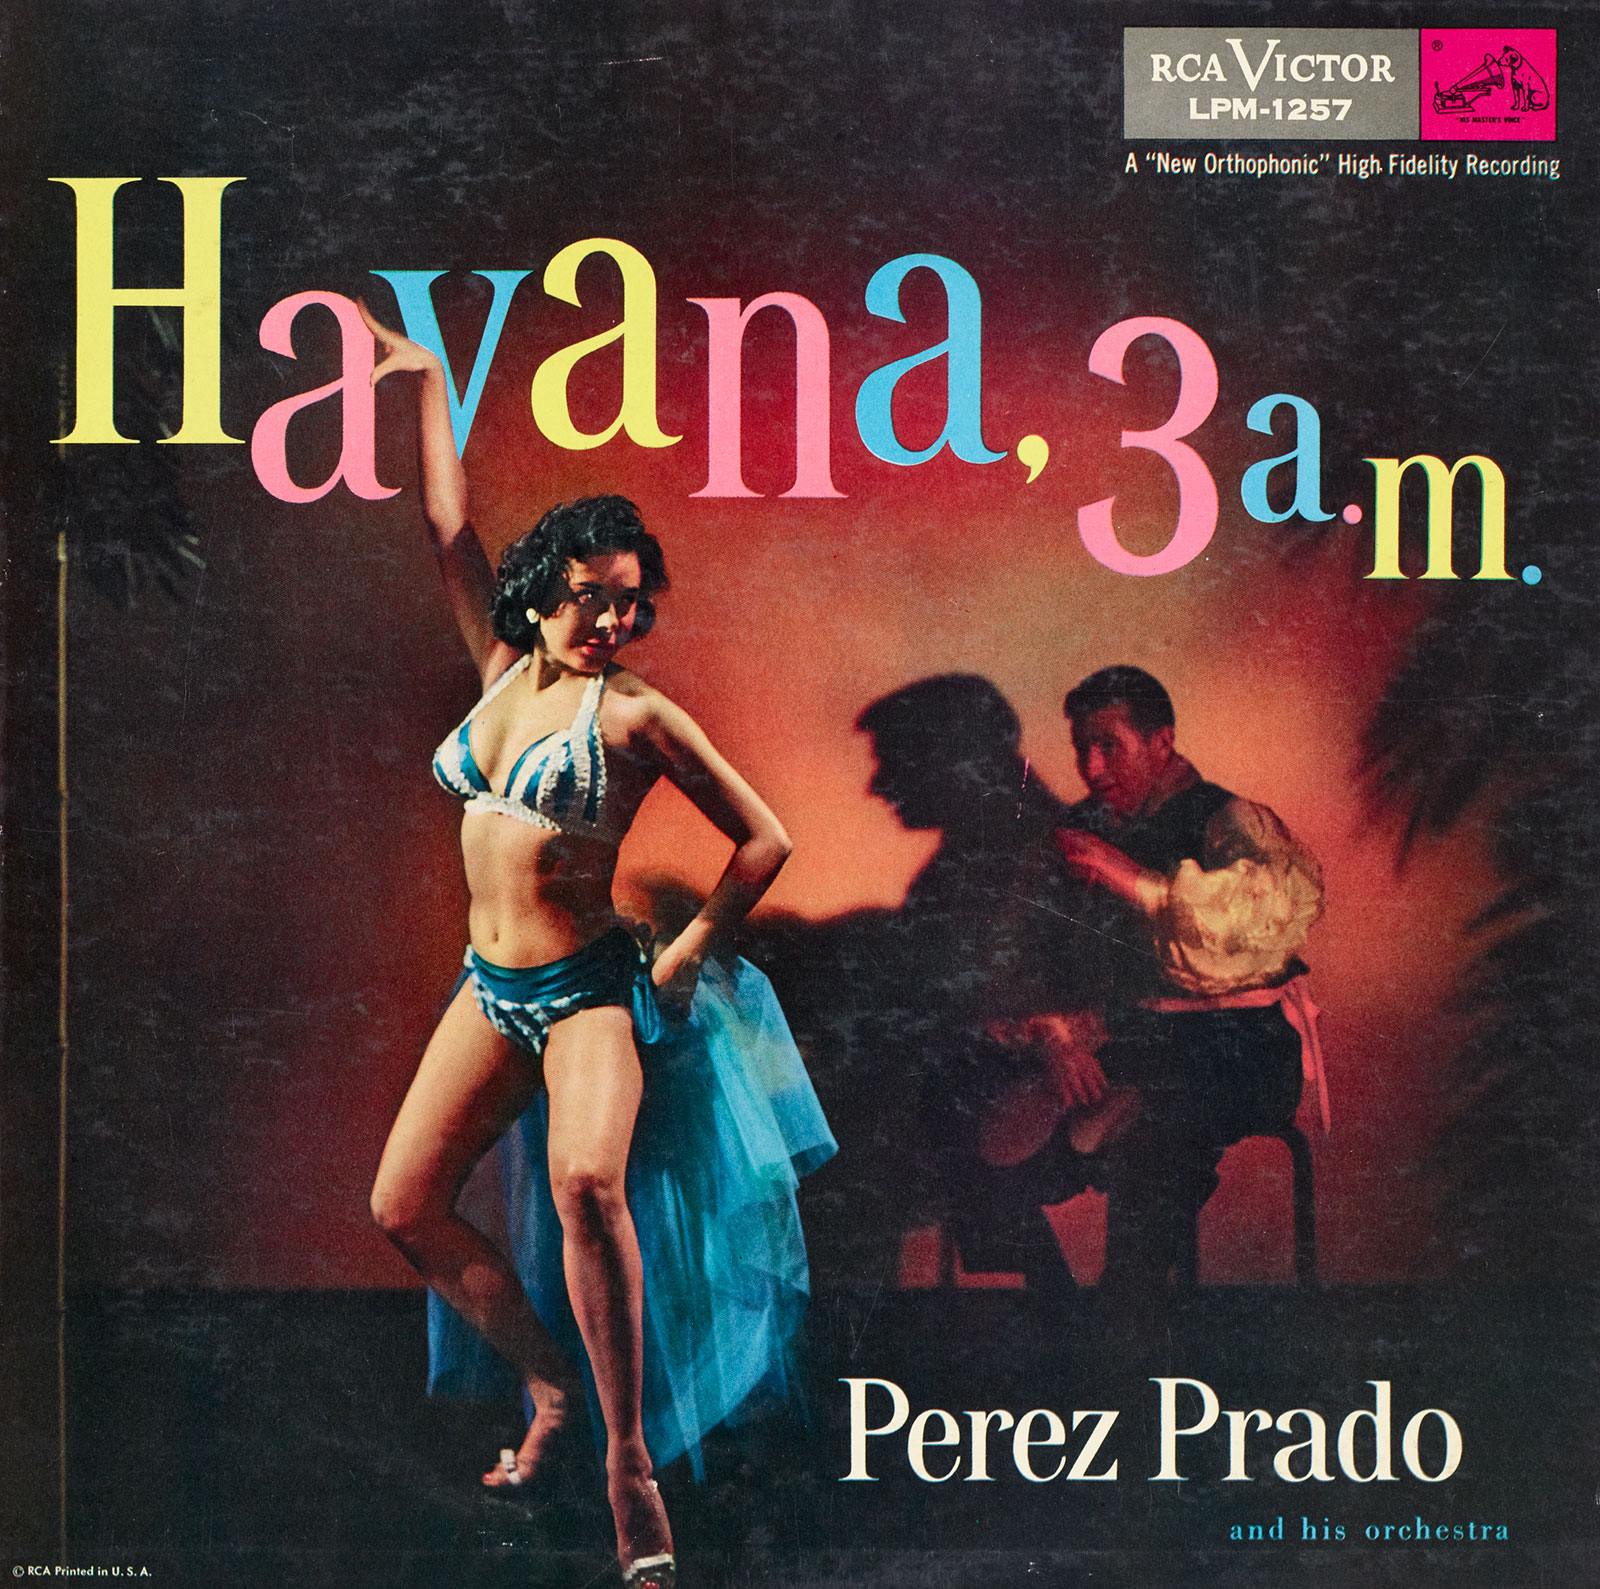 Pérez Prado album cover